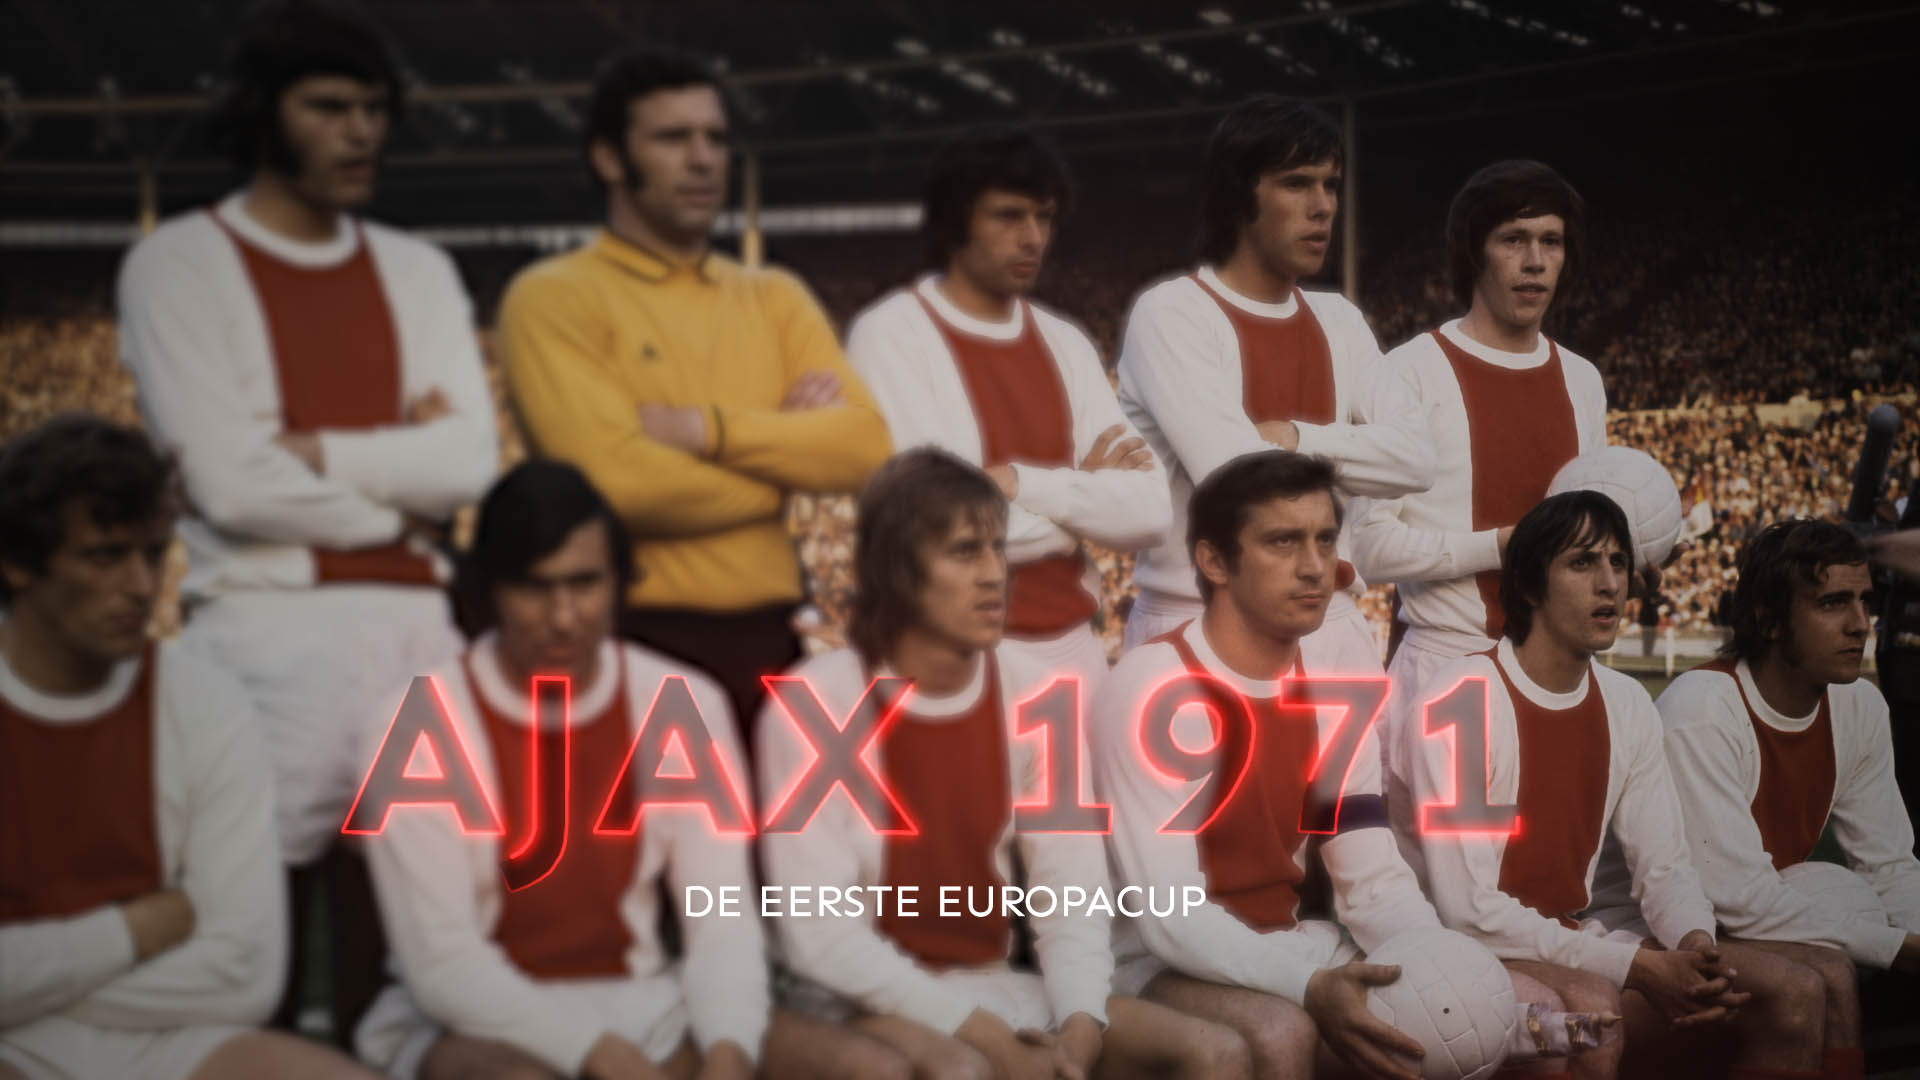 Ajax 1971 – De eerste Europa Cup